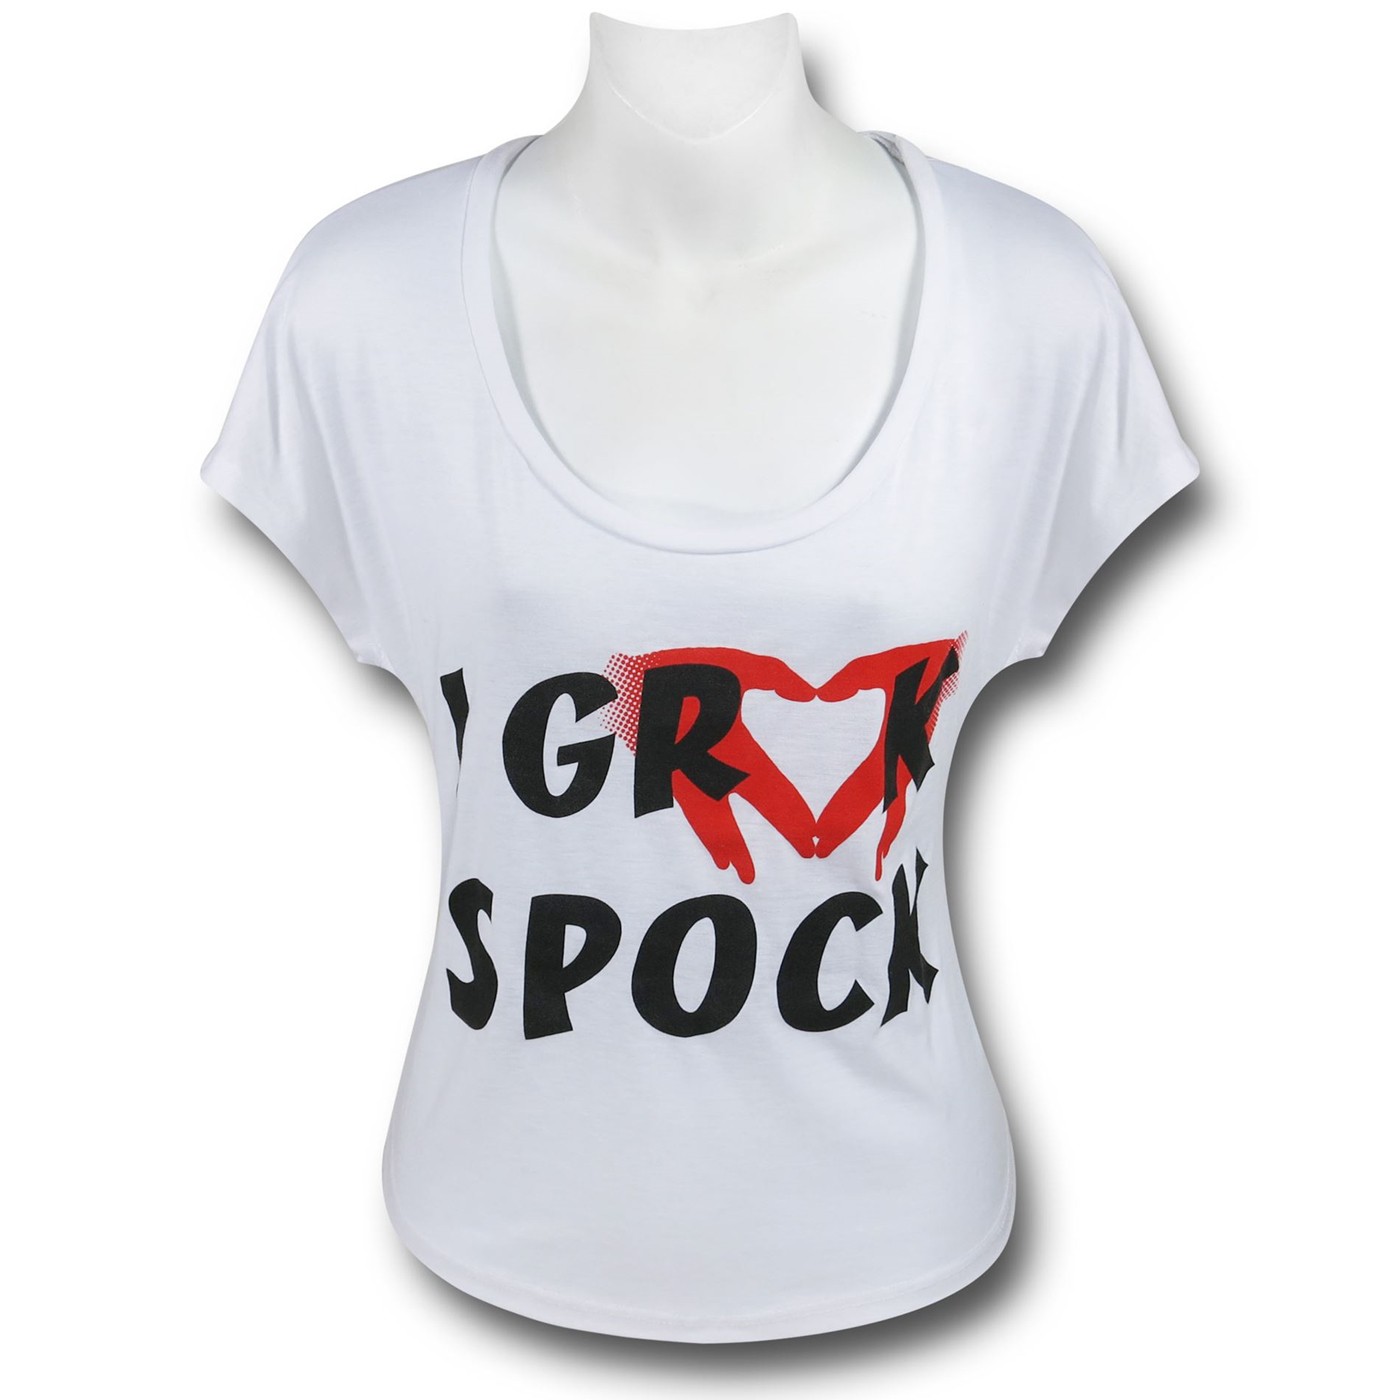 Star Trek Grock Spock Women's T-Shirt